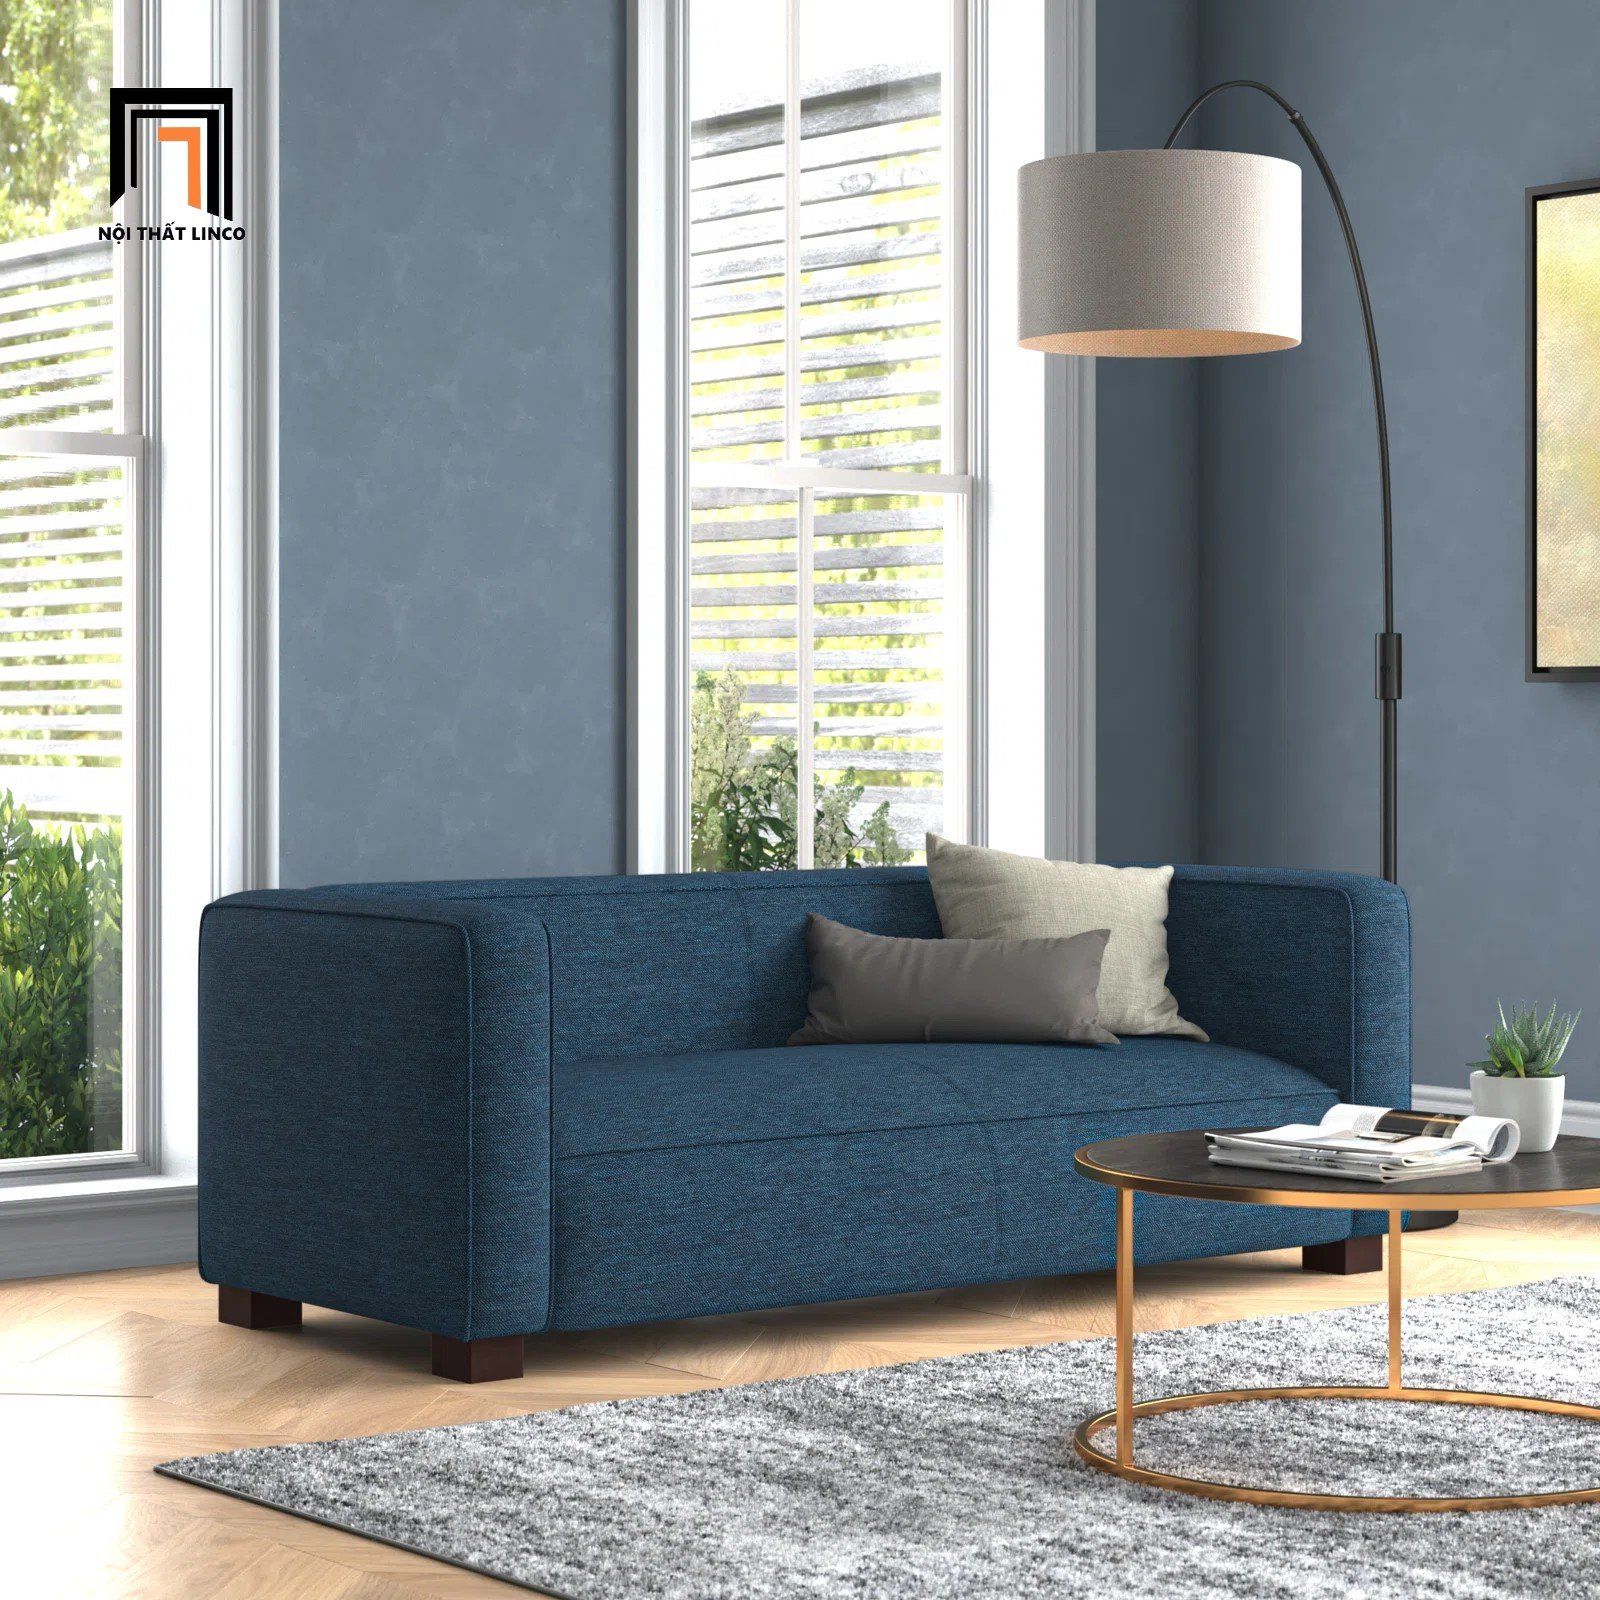  Ghế sofa băng giá rẻ cho căn hộ chung cư BT224 Tuveson dài 1m8 